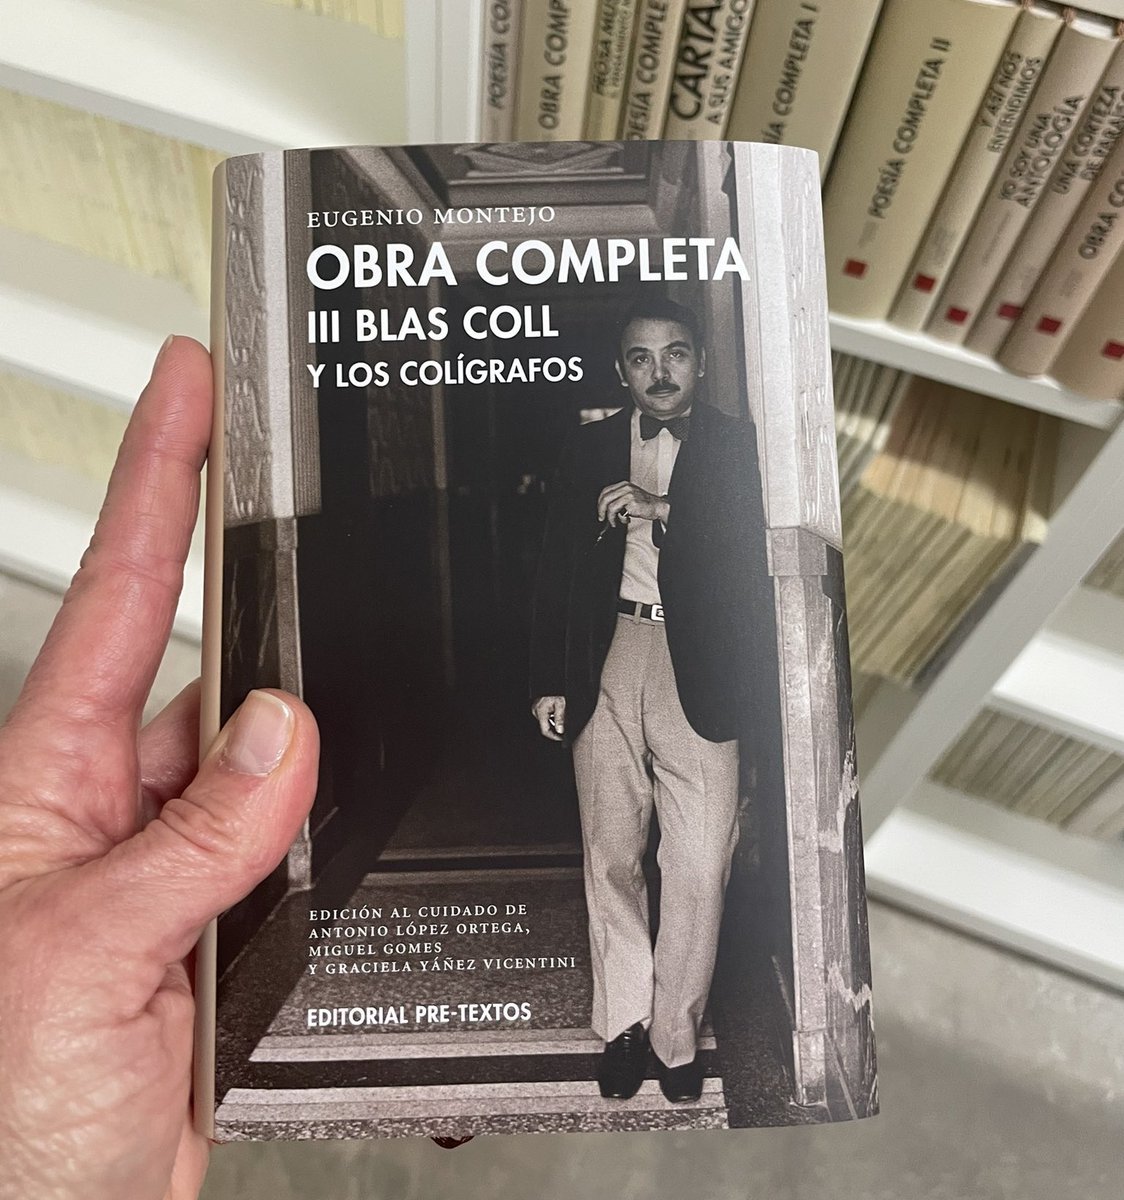 El III vol. de la OBRA COMPLETA de EUGENIO MONTEJO, dedicado a Blas Coll y los colígrafos, en manos de @manuel_borras_arana, el editor de @PreTextosLibros. Nosotros aquí, impacientes, esperando la llegada de ambos! Hurra #AymaraMontejo @ALopez_Ortega #MiguelGomes @vascoszinetar!!